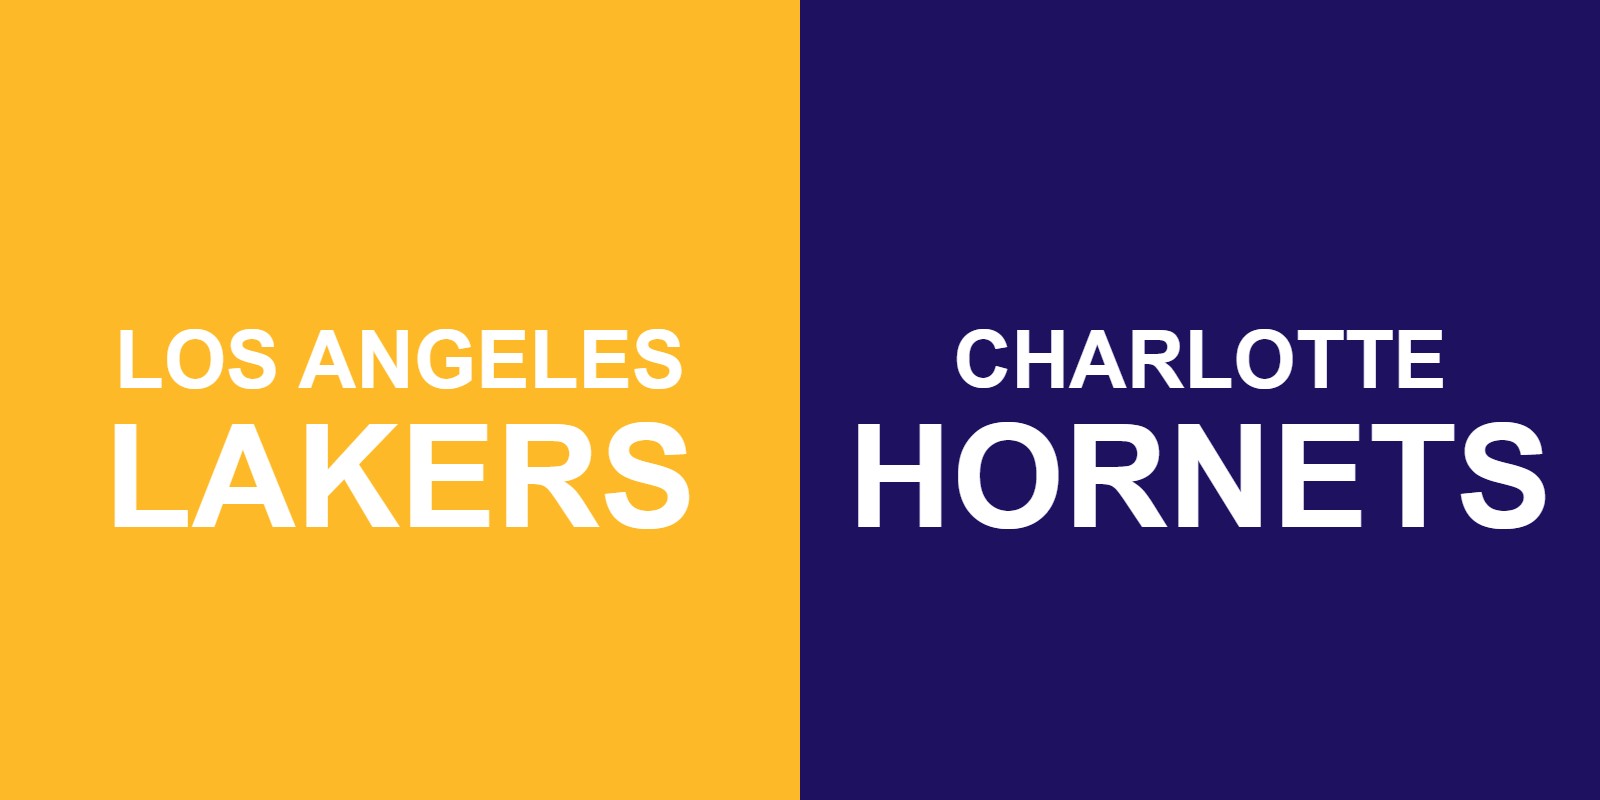 Lakers vs Hornets